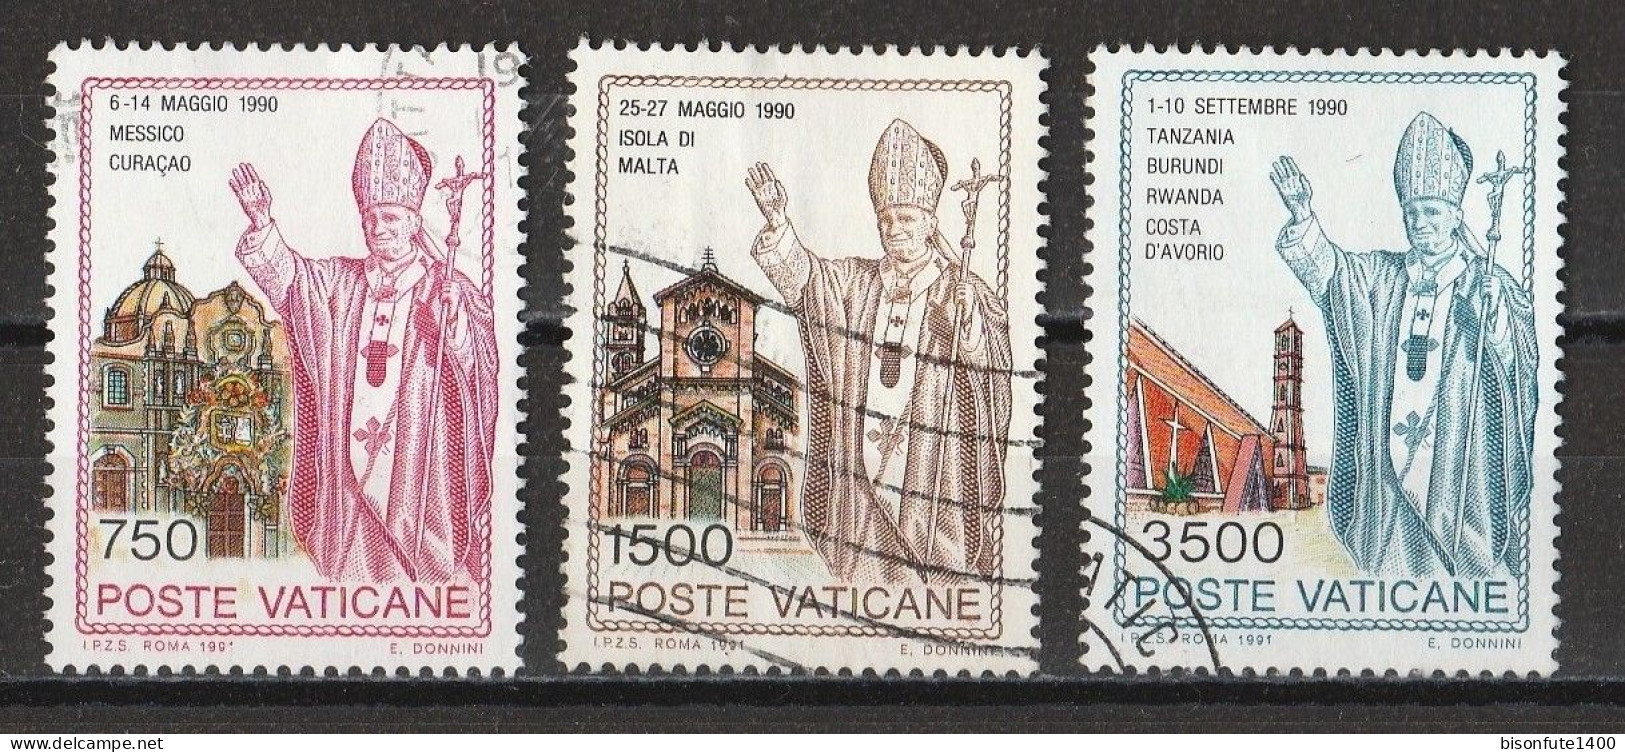 Vatican 1991 : Timbres Yvert & Tellier N° 904 - 905 - 906 - 907 - 908 - 916 - 917 Et 918 Oblitérés. - Oblitérés